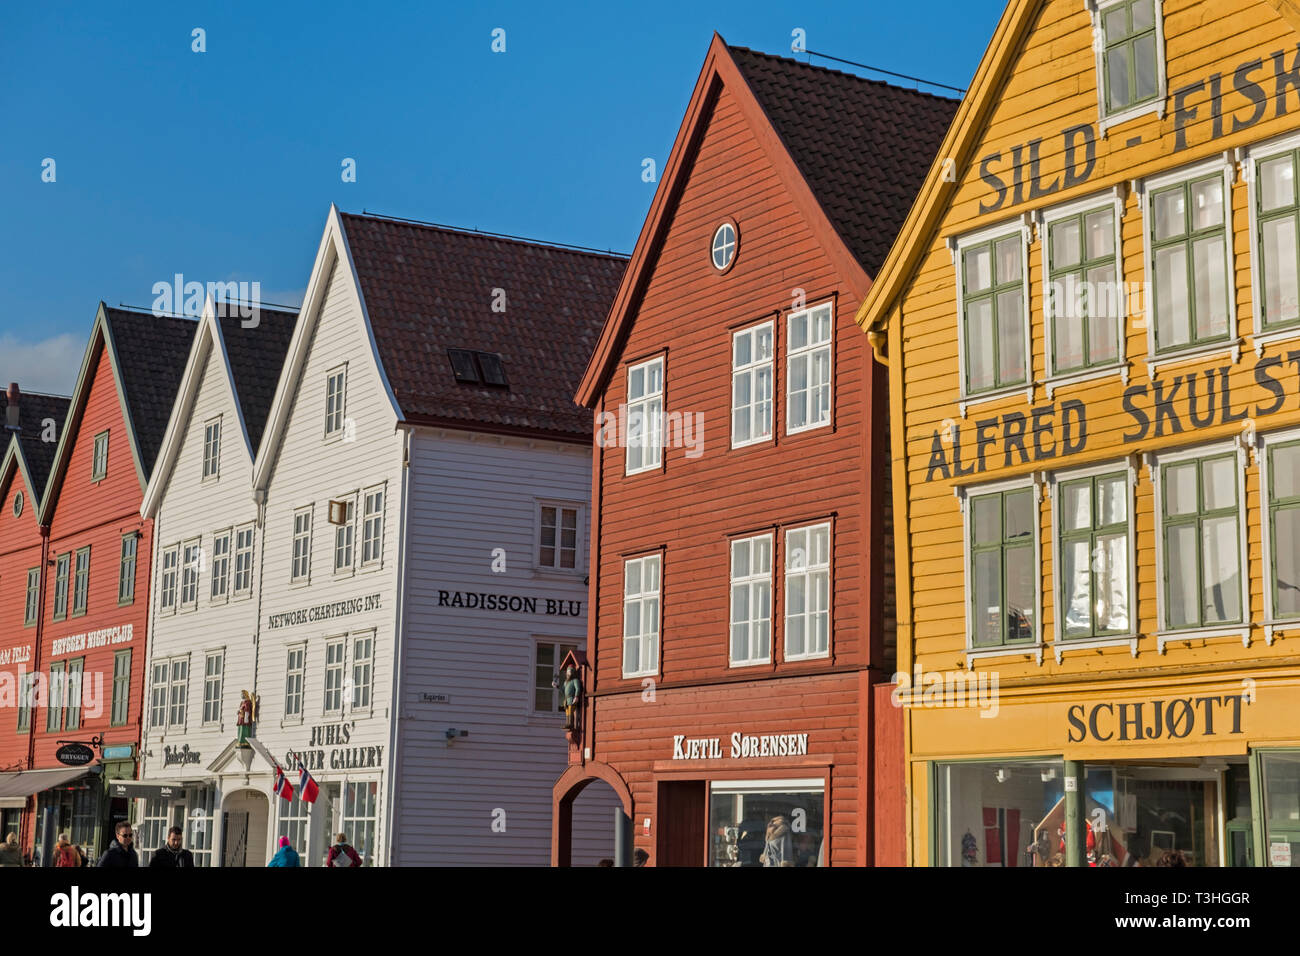 Colourful merchants houses Bryggen Bergen Norway Stock Photo